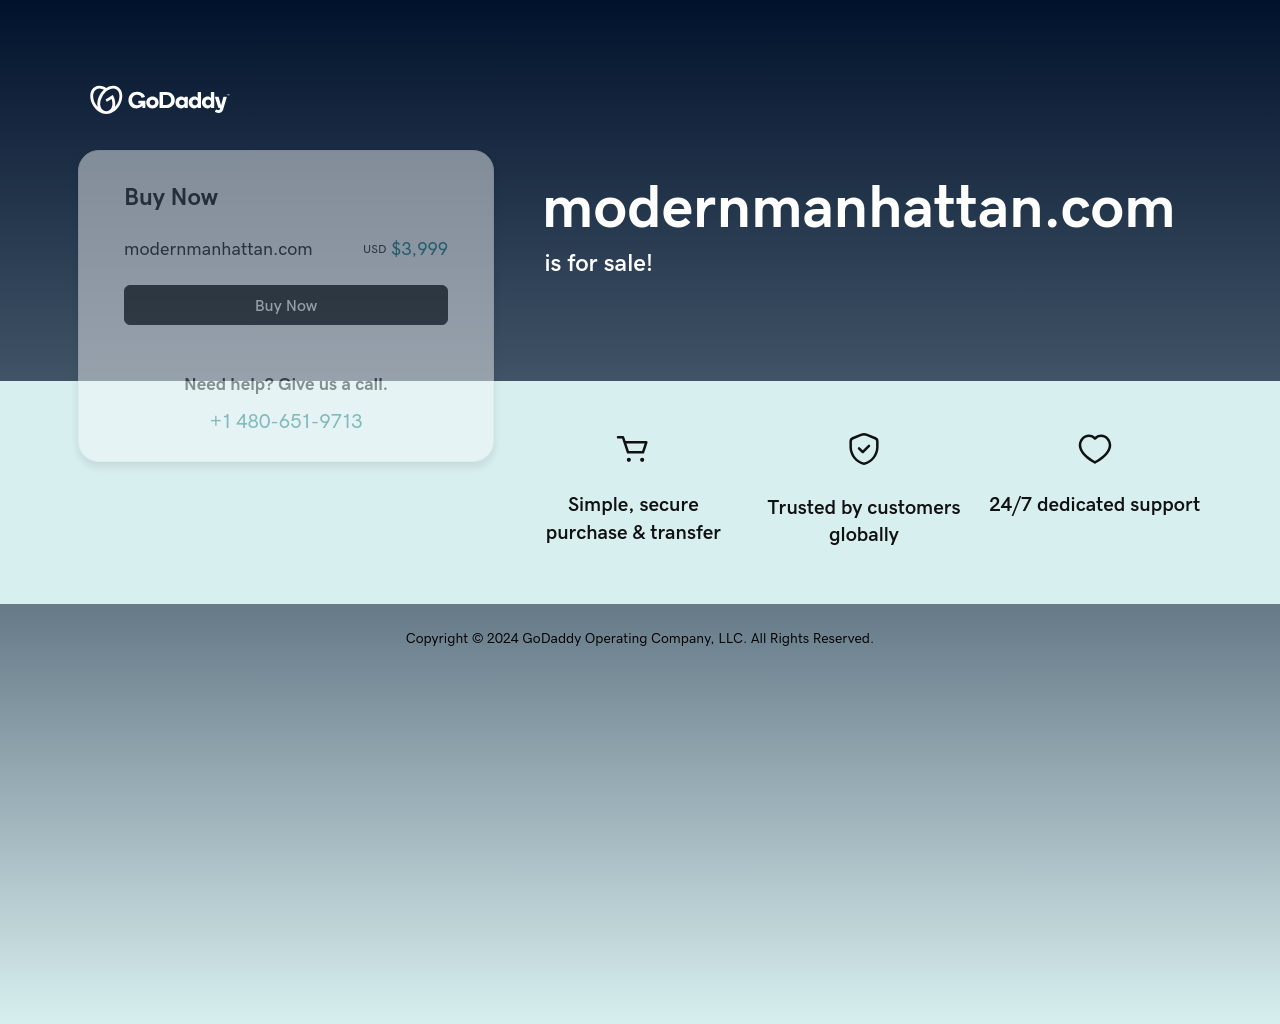 modernmanhattan.com